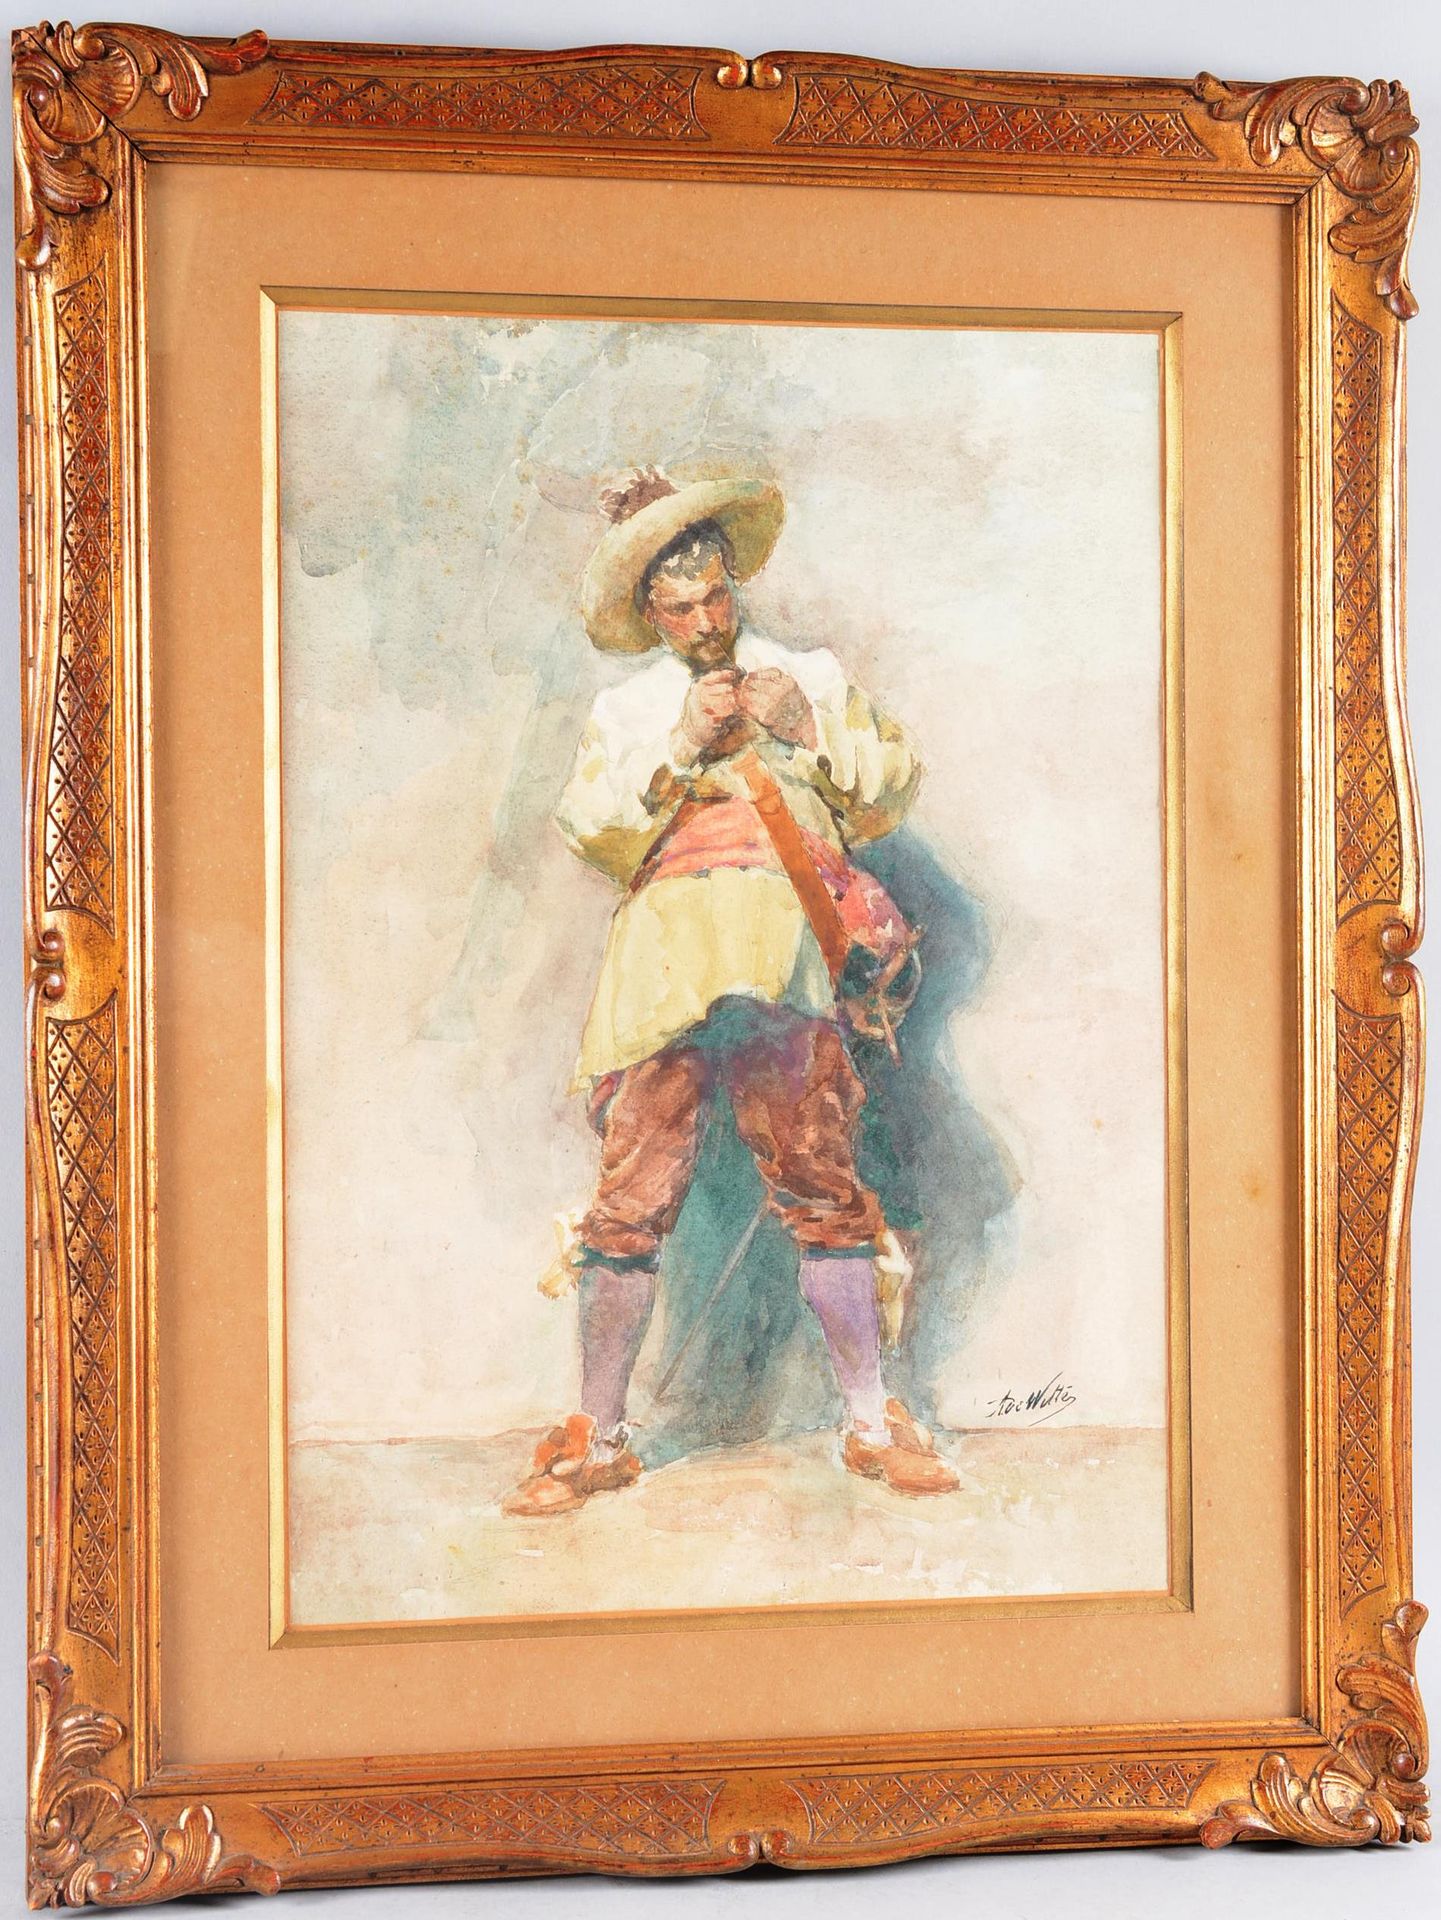 Adrien de Witte (1850-1935) 阿德里安-德-维特(1850-1935)

"Arquebusier"。

水彩画，右下方有签名。艺术家&hellip;